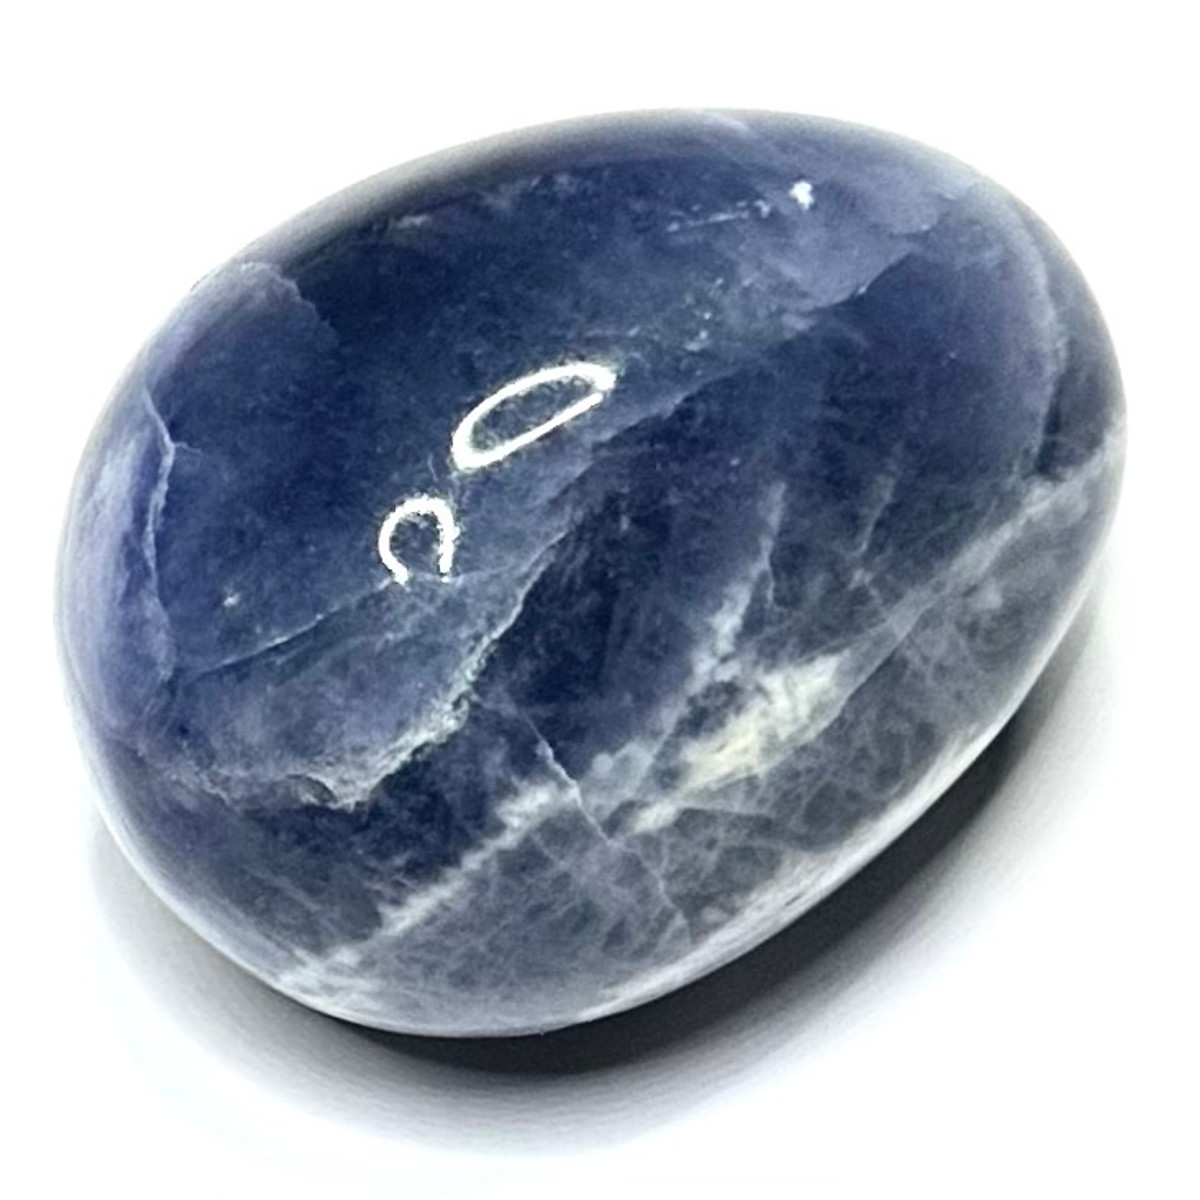 One of a Kind Sodalite Egg Stone-1 3/4 x 1 1/2"